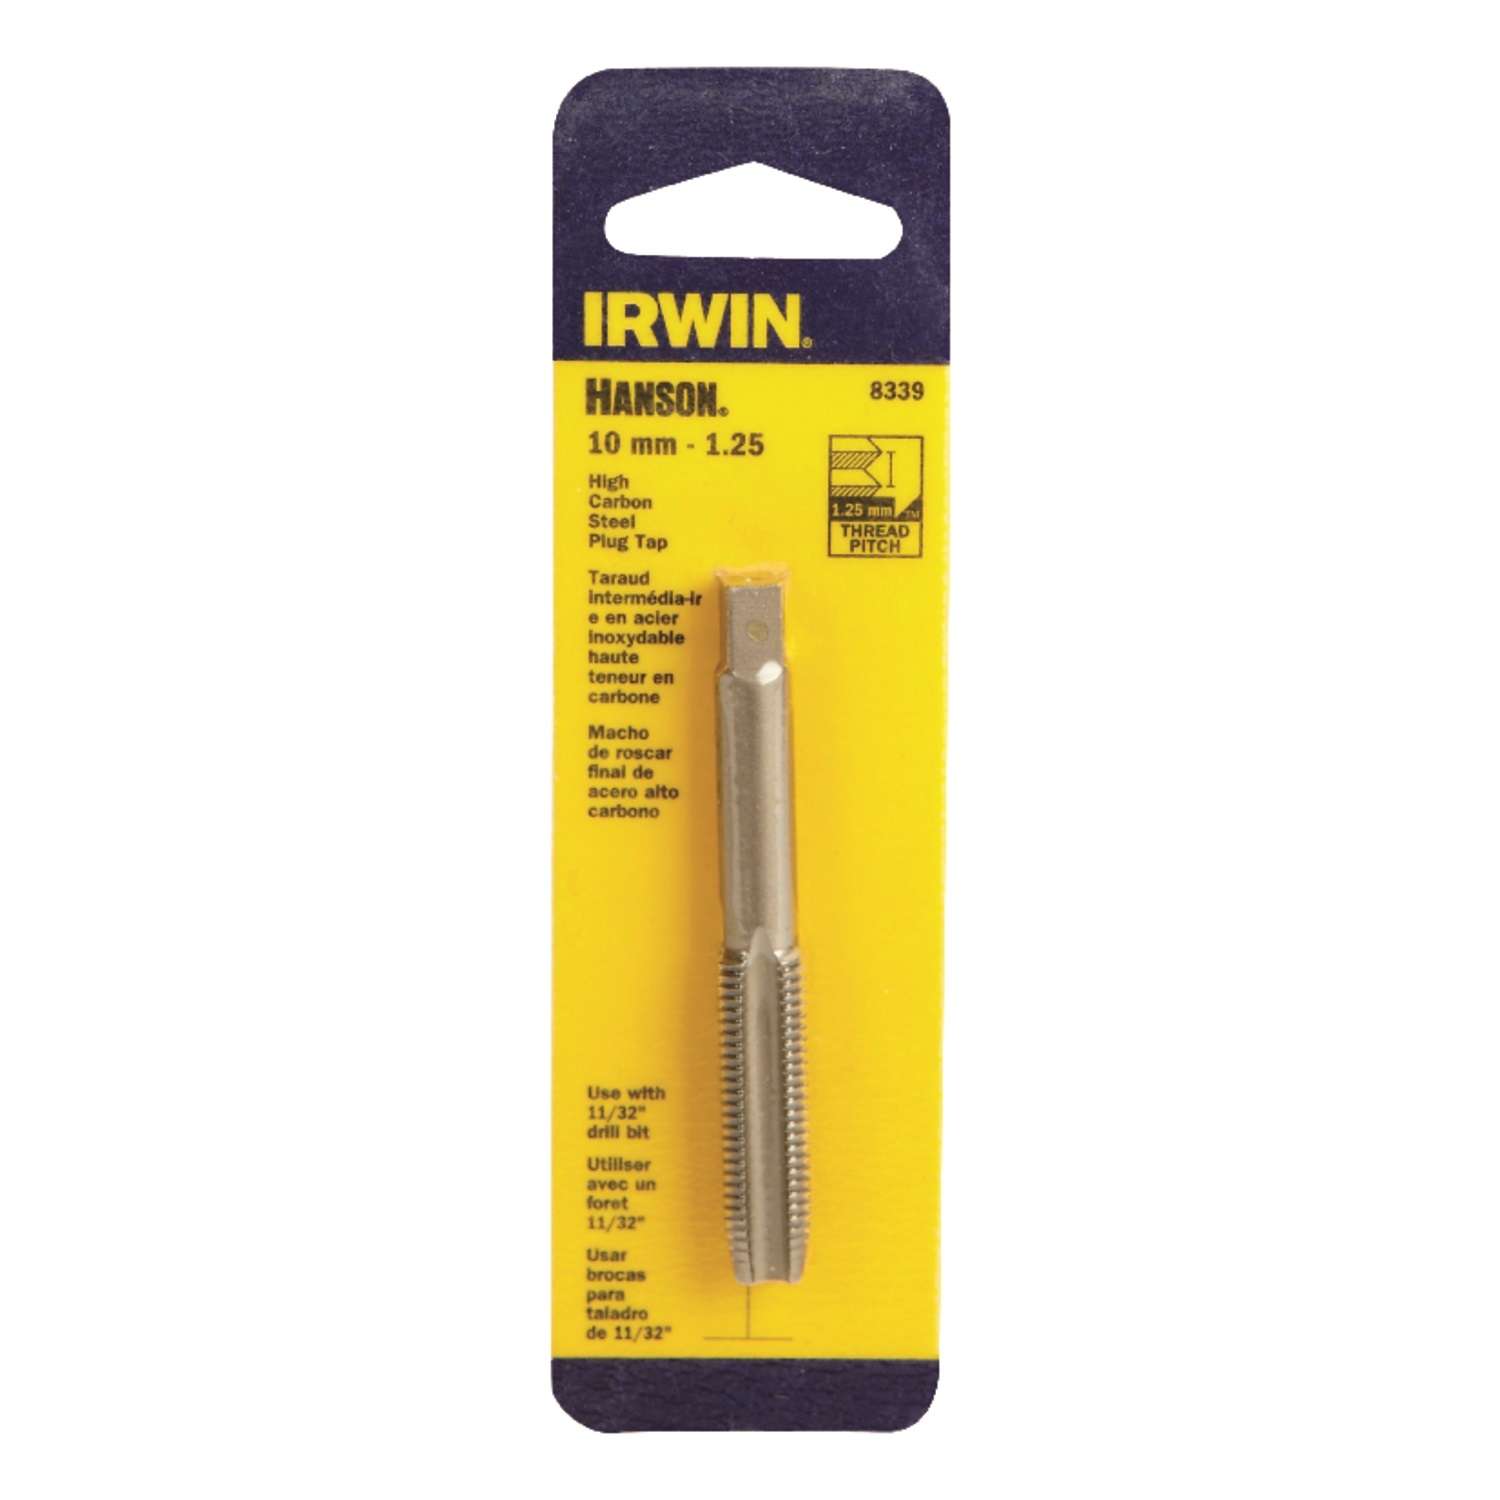 Irwin 1738 M10 X 1.0 Metric 10MM Carbon Steel Plug Tap 4FL USA Made RH 